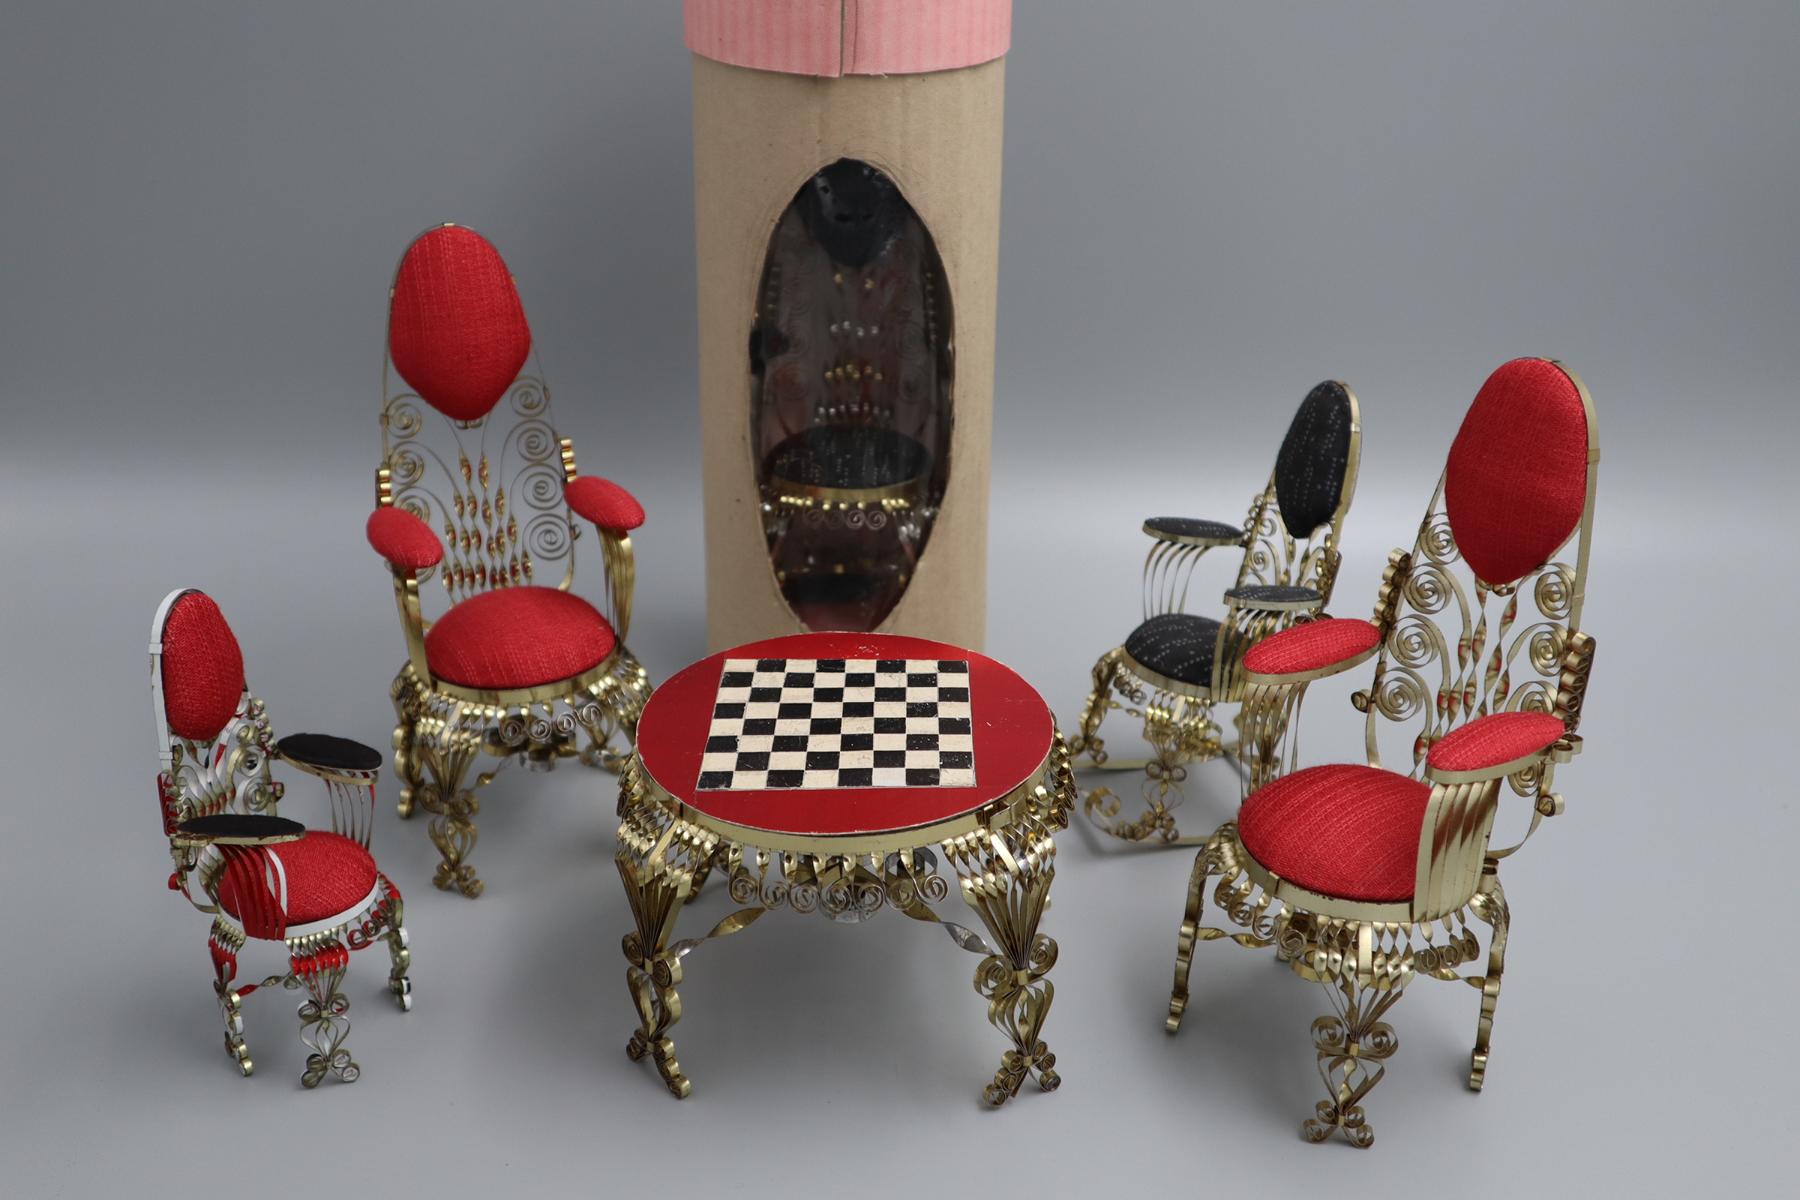 Puppenmöbel-Set bestehend aus zwei großen Stühlen und einem kleinen Stuhl mit roter Polsterung, einem Schaukelstuhl mit grauer Polsterung und einem Tisch mit roter Oberfläche und einem aufgemalten Schachbrett, hergestellt aus Blechdosen, Objekt im Strafvollzugsmuseum